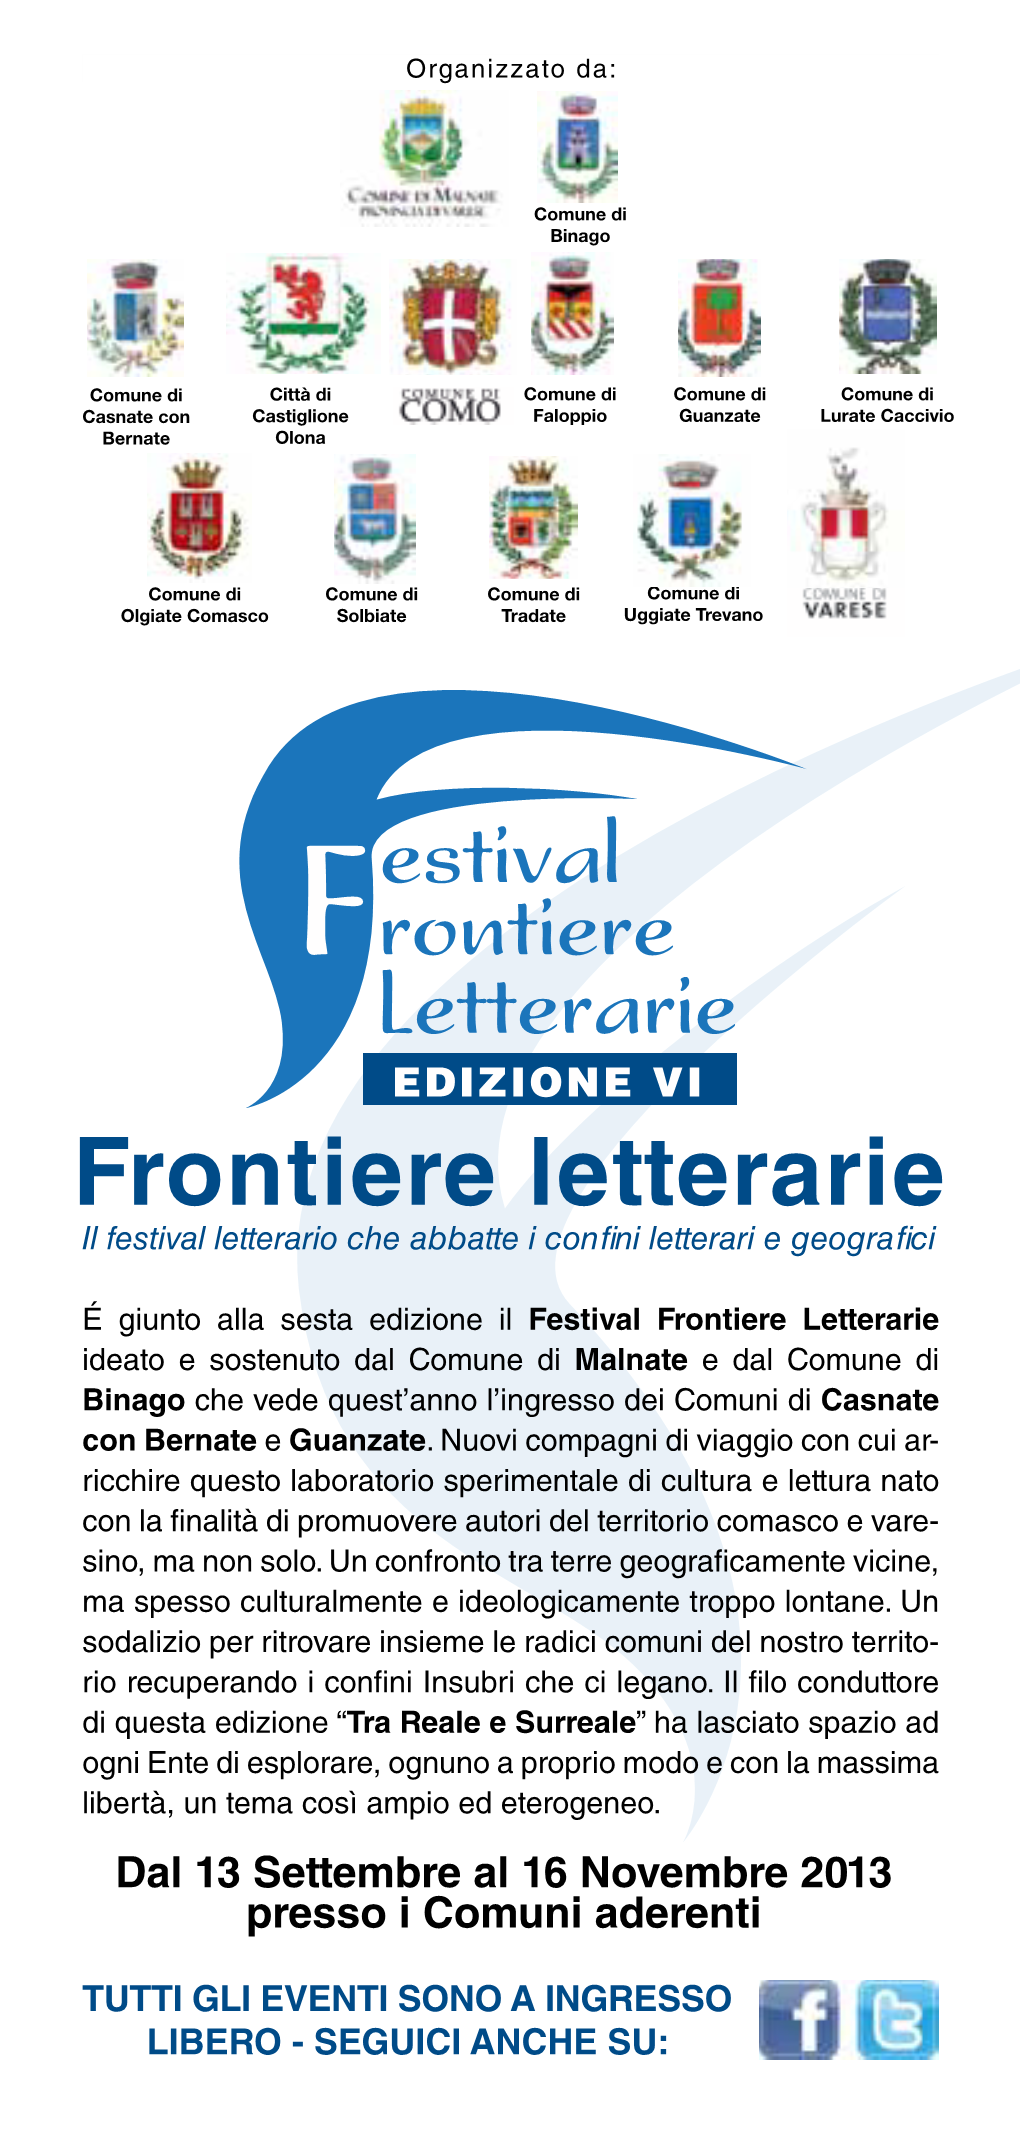 Frontiere Letterarie Il Festival Letterario Che Abbatte I Confini Letterari E Geografici